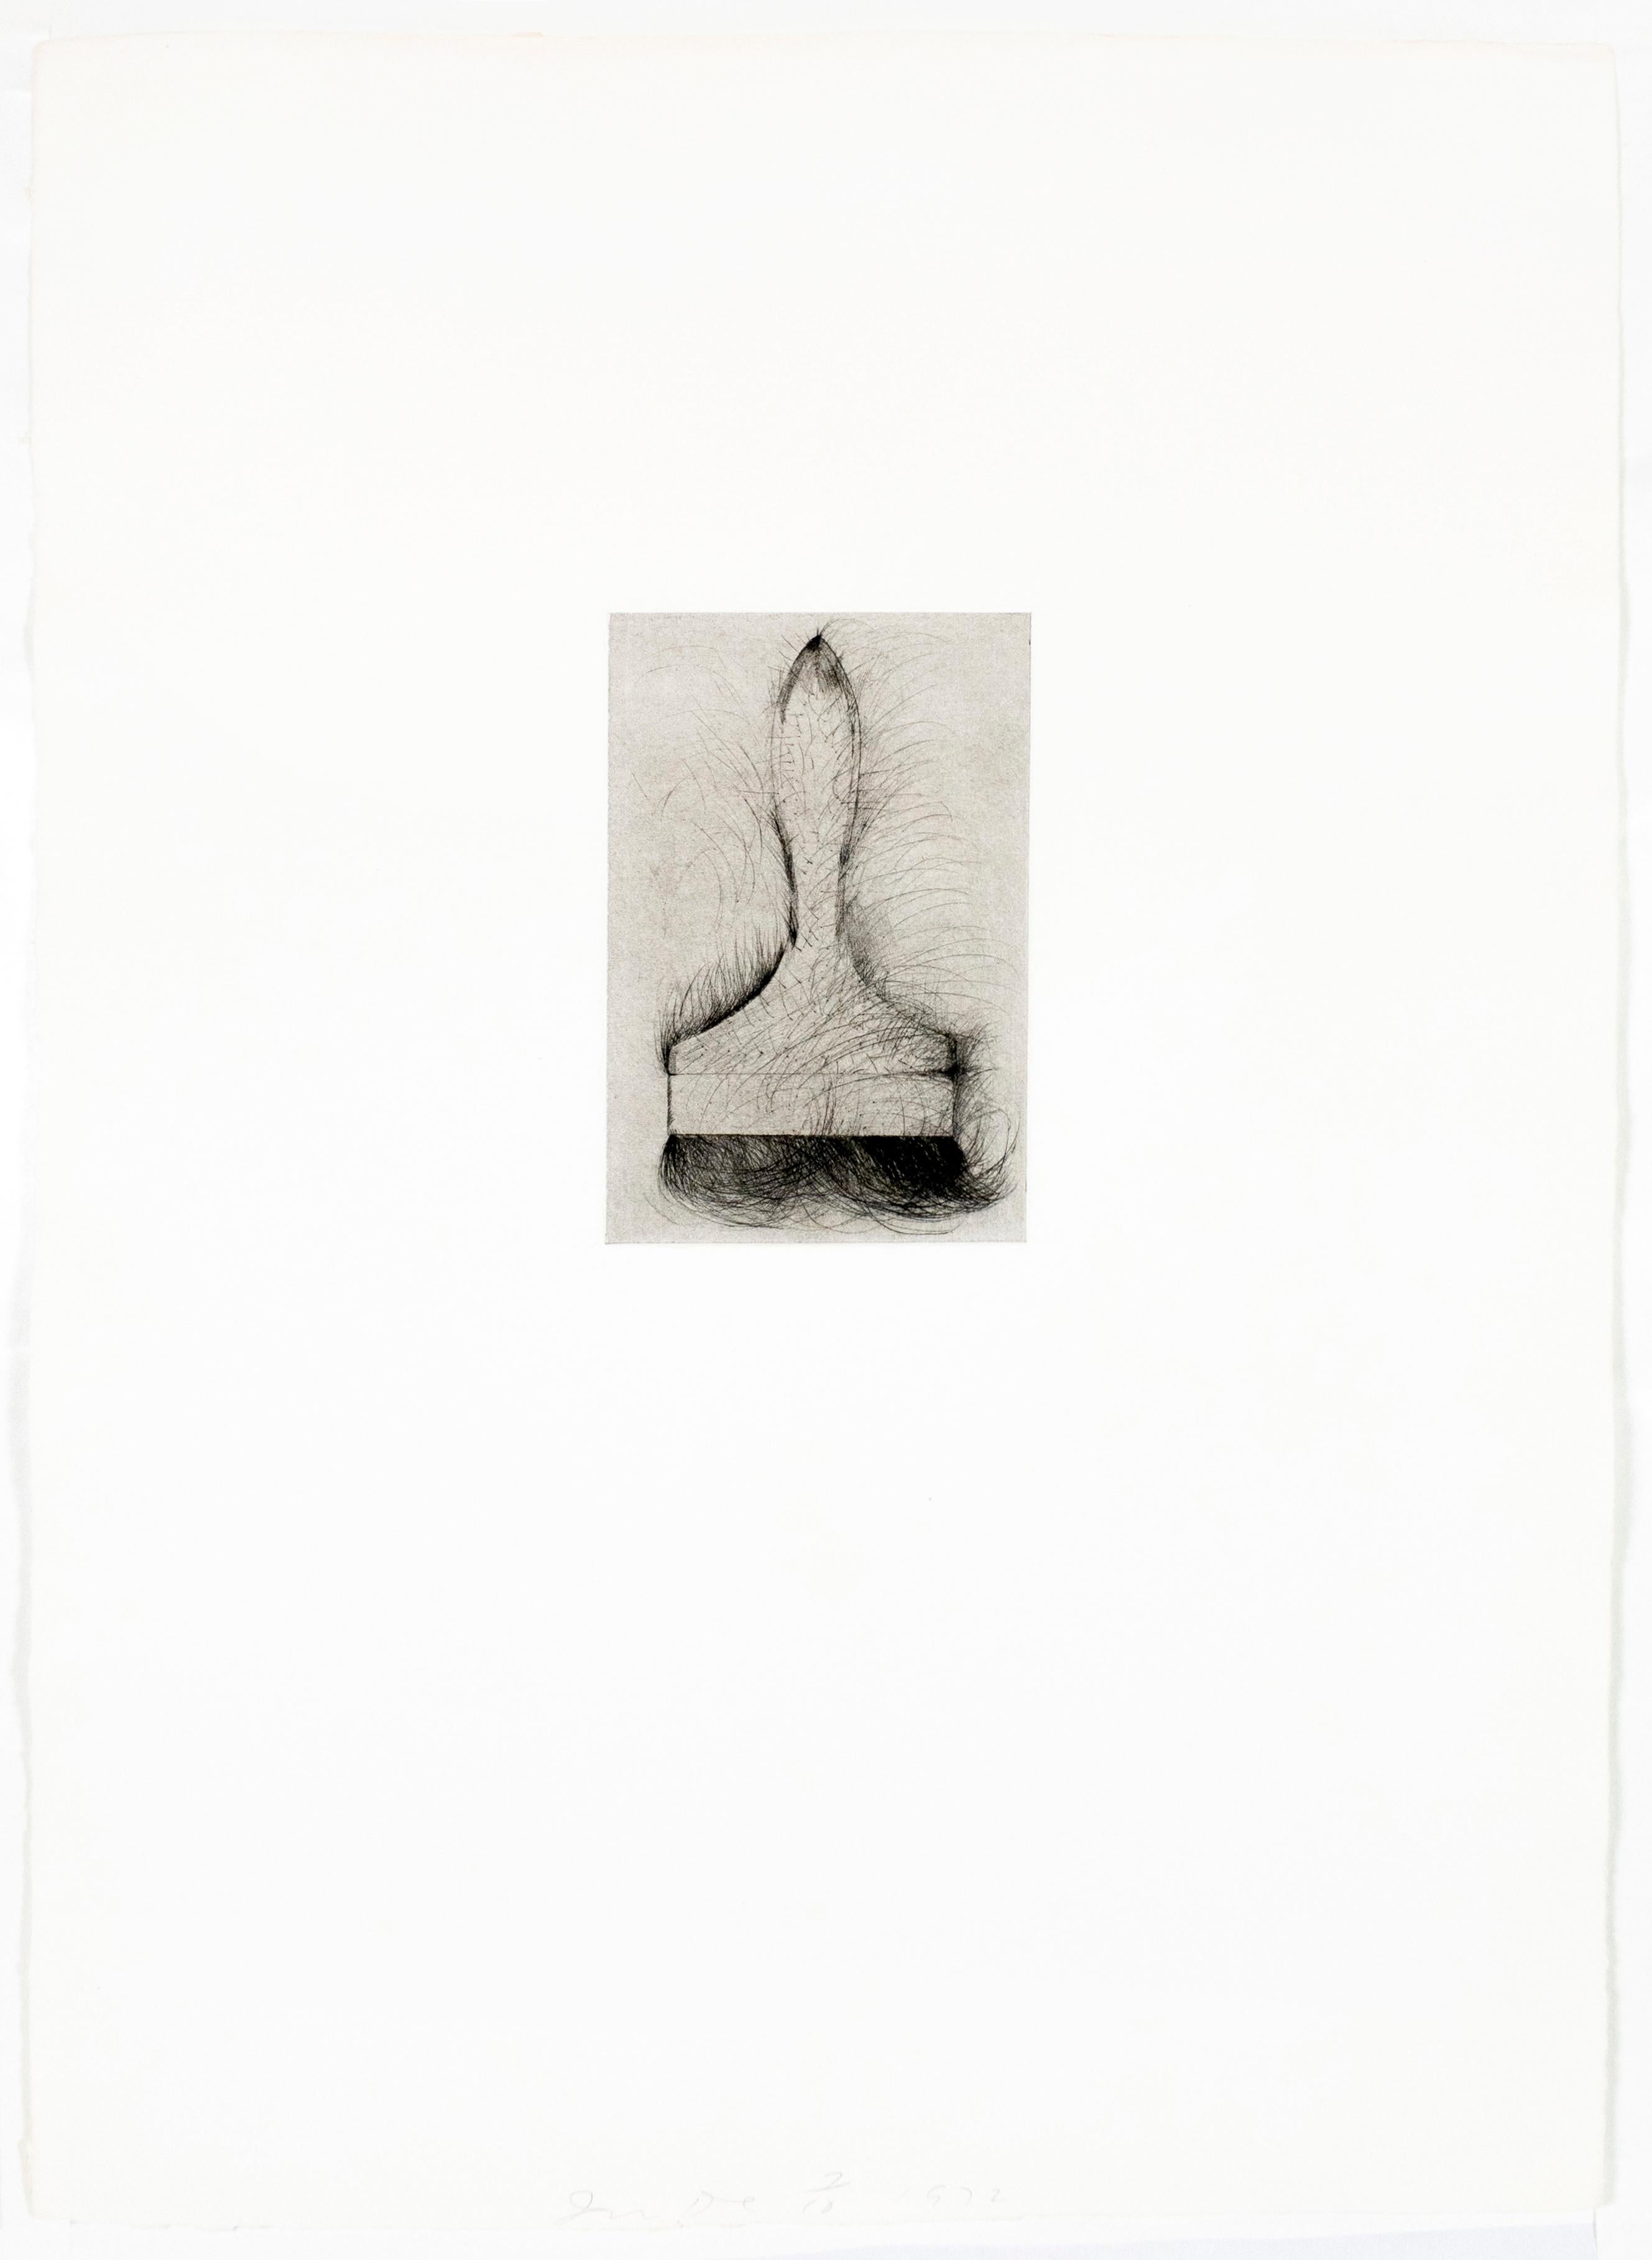 Jim Dine zeichnete die Platte für dieses Bild im gleichen Zeitraum wie sein Portfolio mit Kaltnadelradierungen 